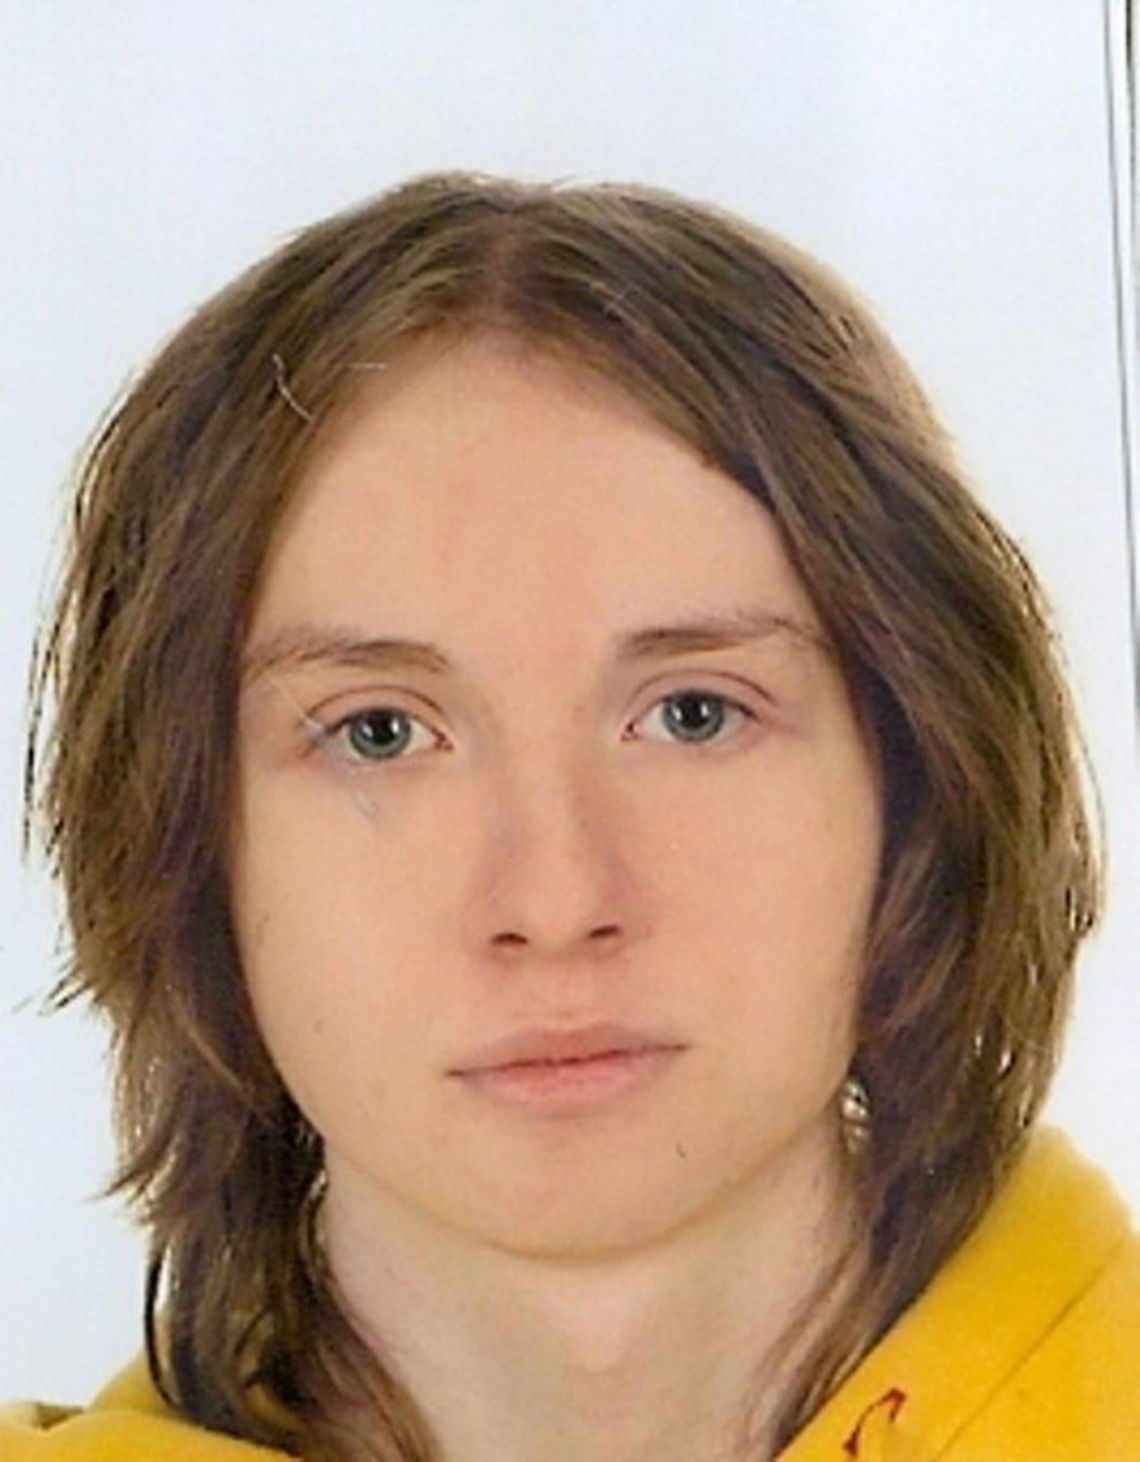 Poszukiwany zaginiony siedemnastolatek Jakub Kopeć